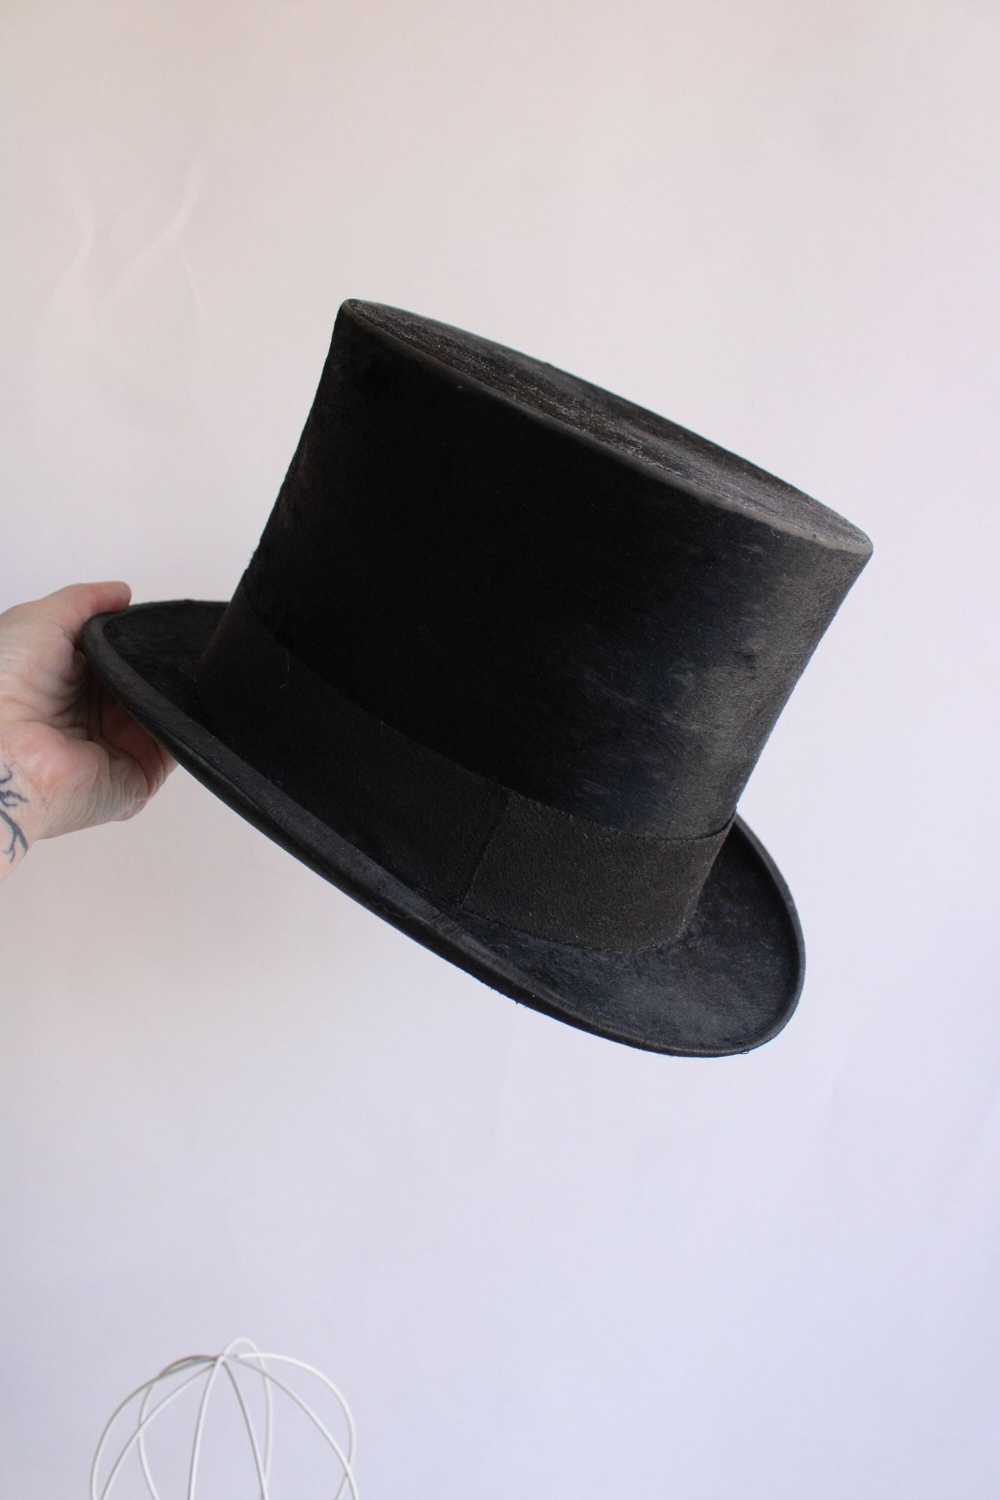 Vintage Antique 1800s Top Hat - image 3